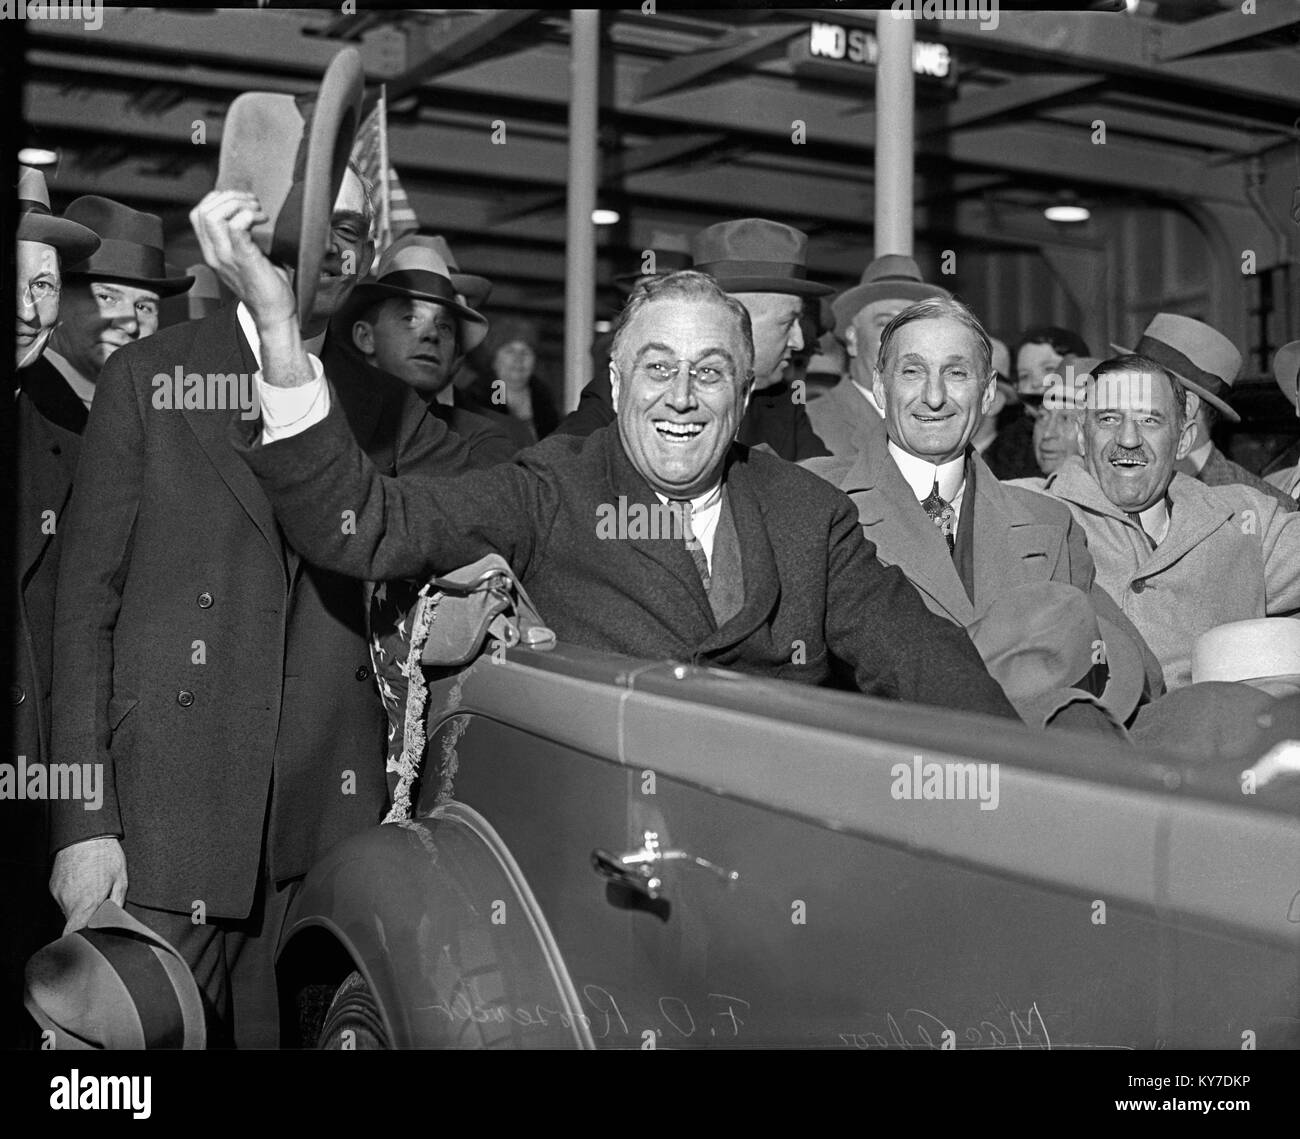 Franklin Roosevelt arrive à San Francisco, juste avant l'élection 1932 pour livrer un discours économique au Commonwealth Club. Équitation dans la voiture avec RAD est, William G. McAdoo et justes Wardell. Le 24 septembre 1932. Banque D'Images